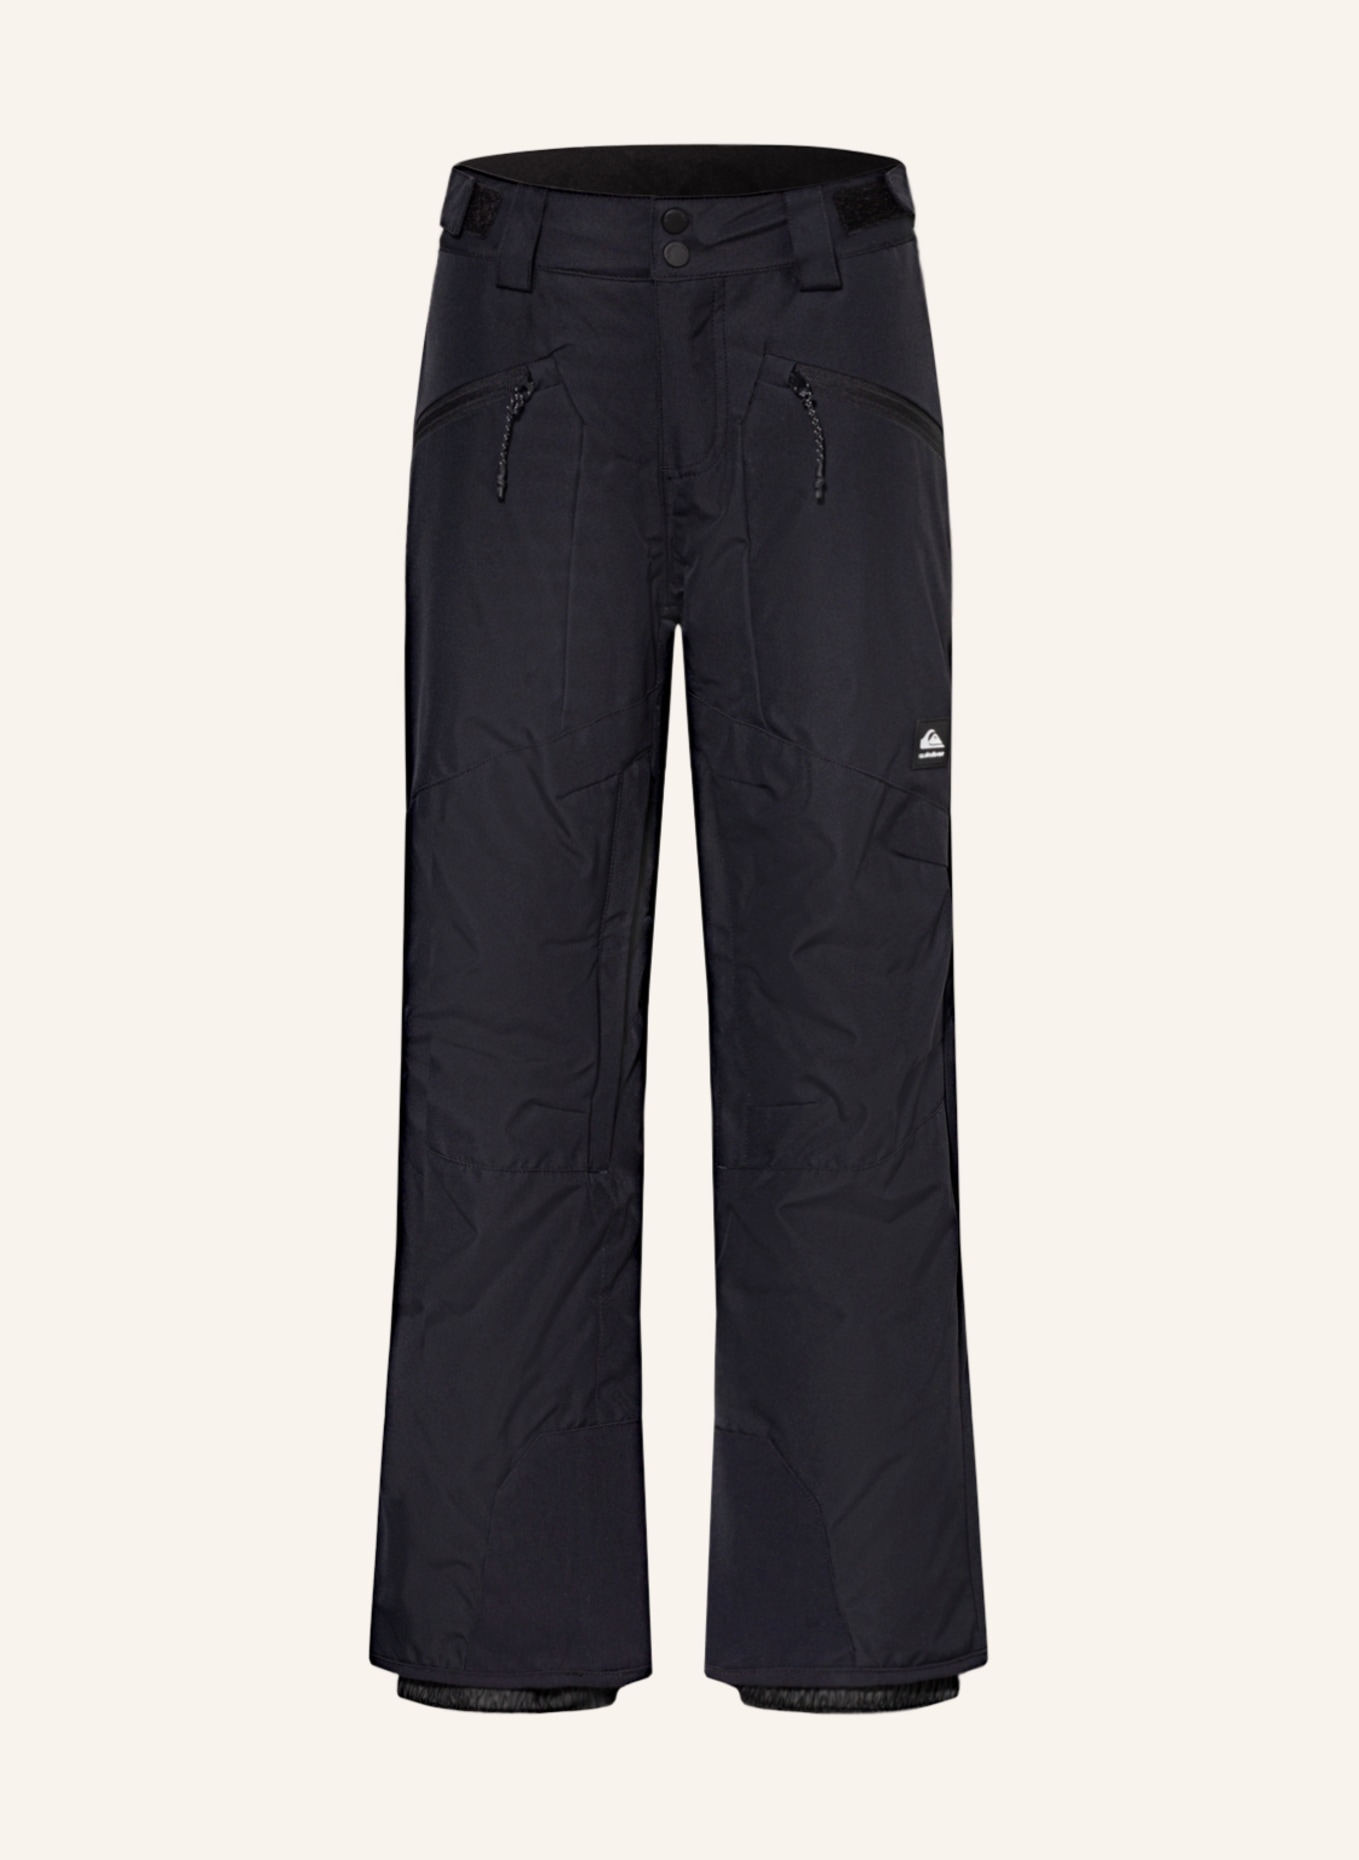 QUIKSILVER Ski pants BOUNDRY, Color: BLACK (Image 1)